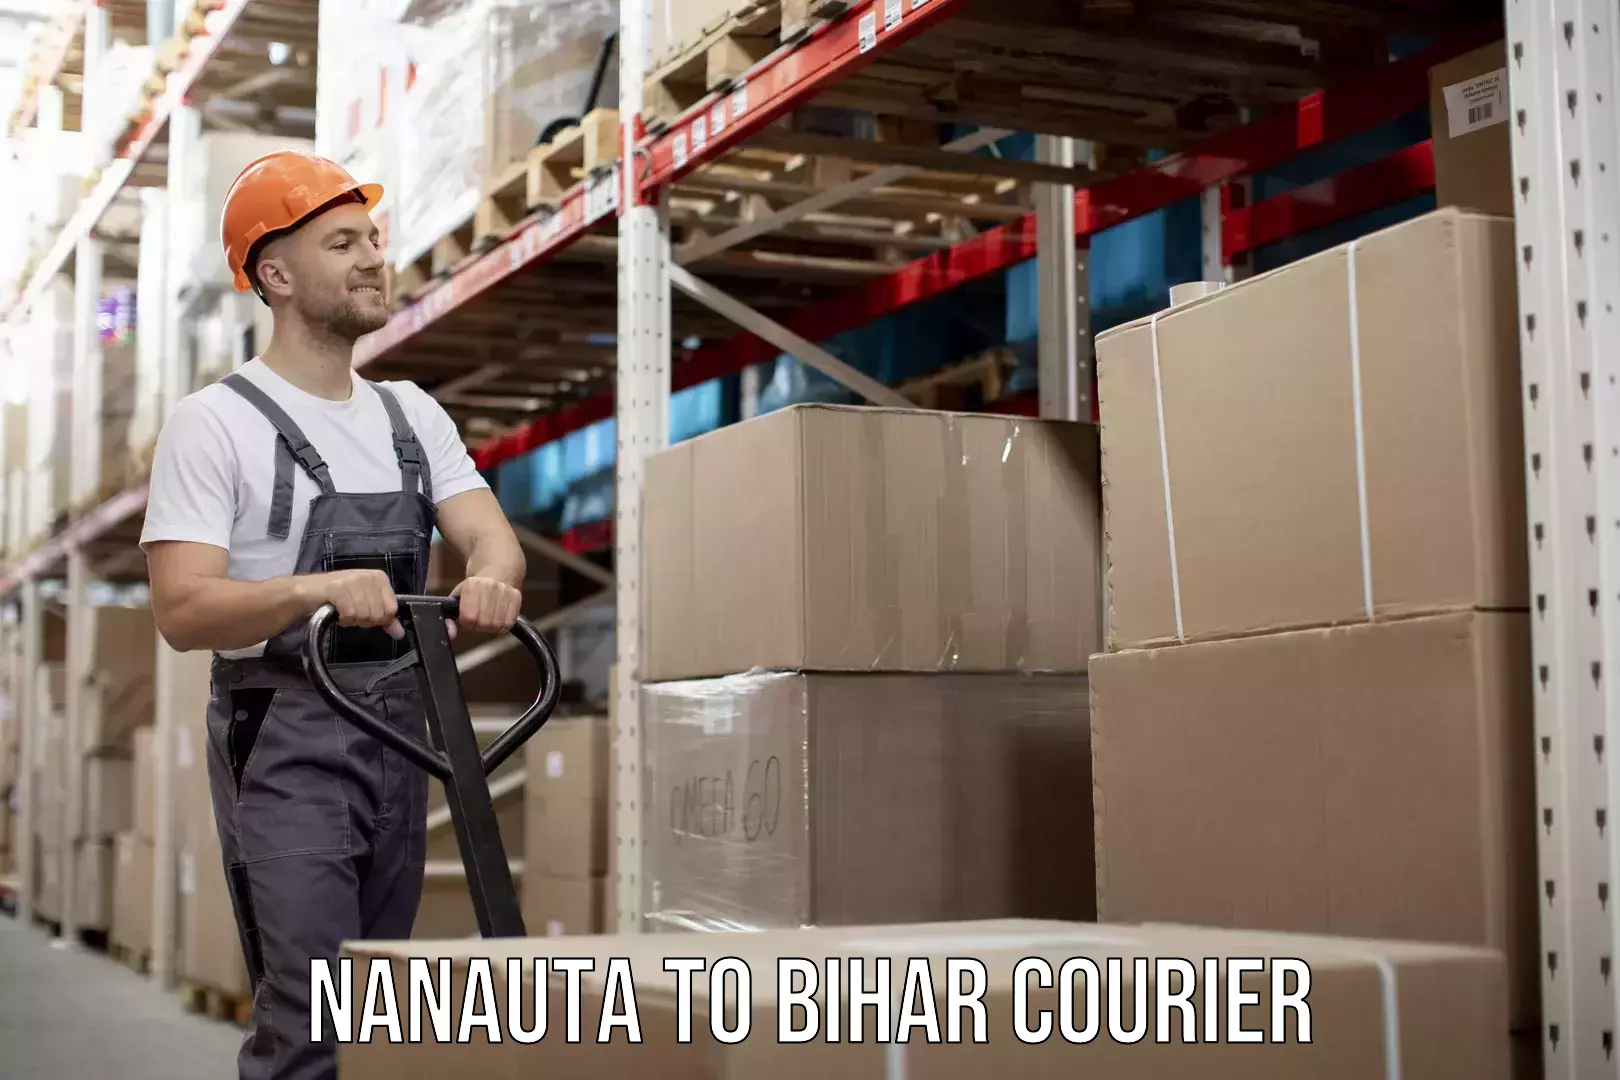 Efficient moving company Nanauta to Bihar